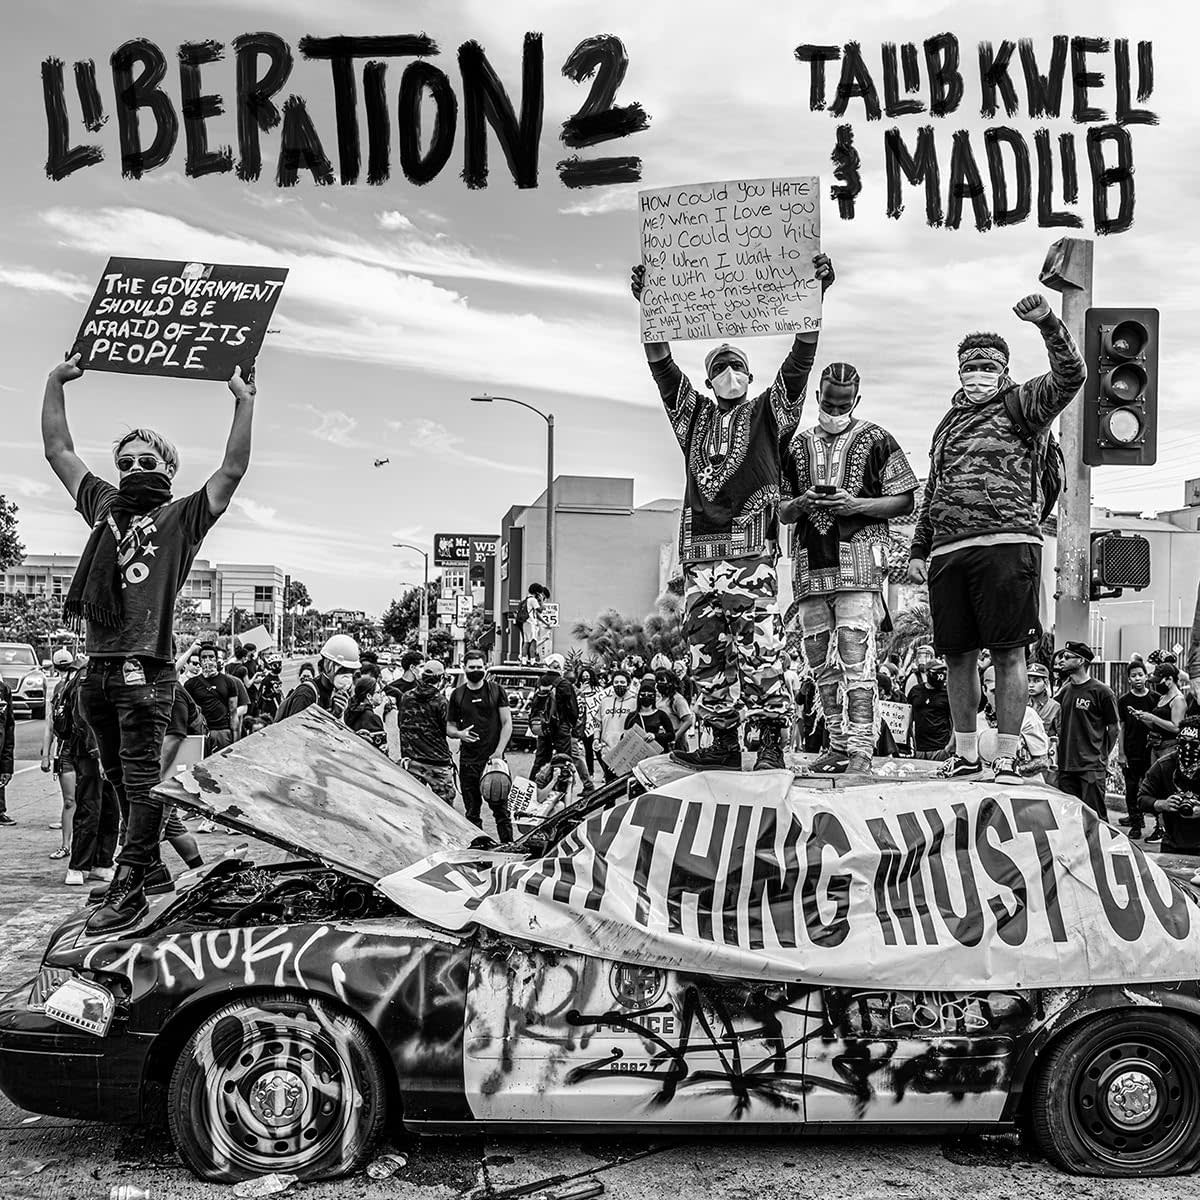 Talib Kweli & Madlib – Liberation 2